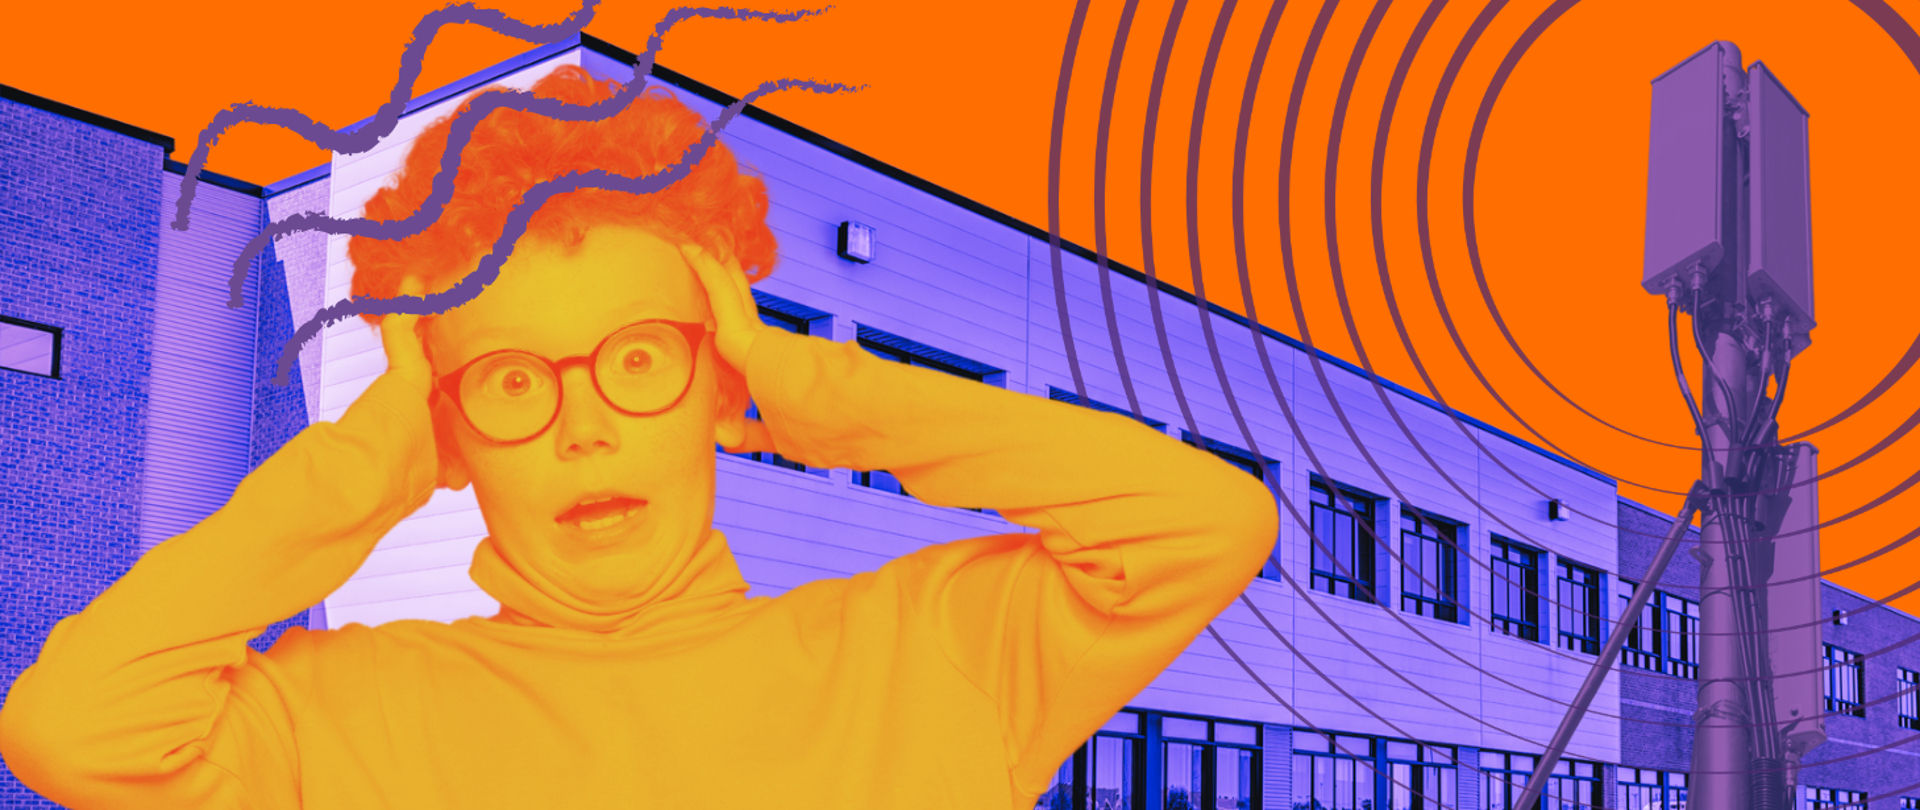 W tle ilustracji budynek szkolny ze stojącym obok niego, promieniującym masztem antenowym. Na pierwszym planie chłopiec w okularach trzyma się rękami za głowę z wyrazem przerażenia na twarzy.